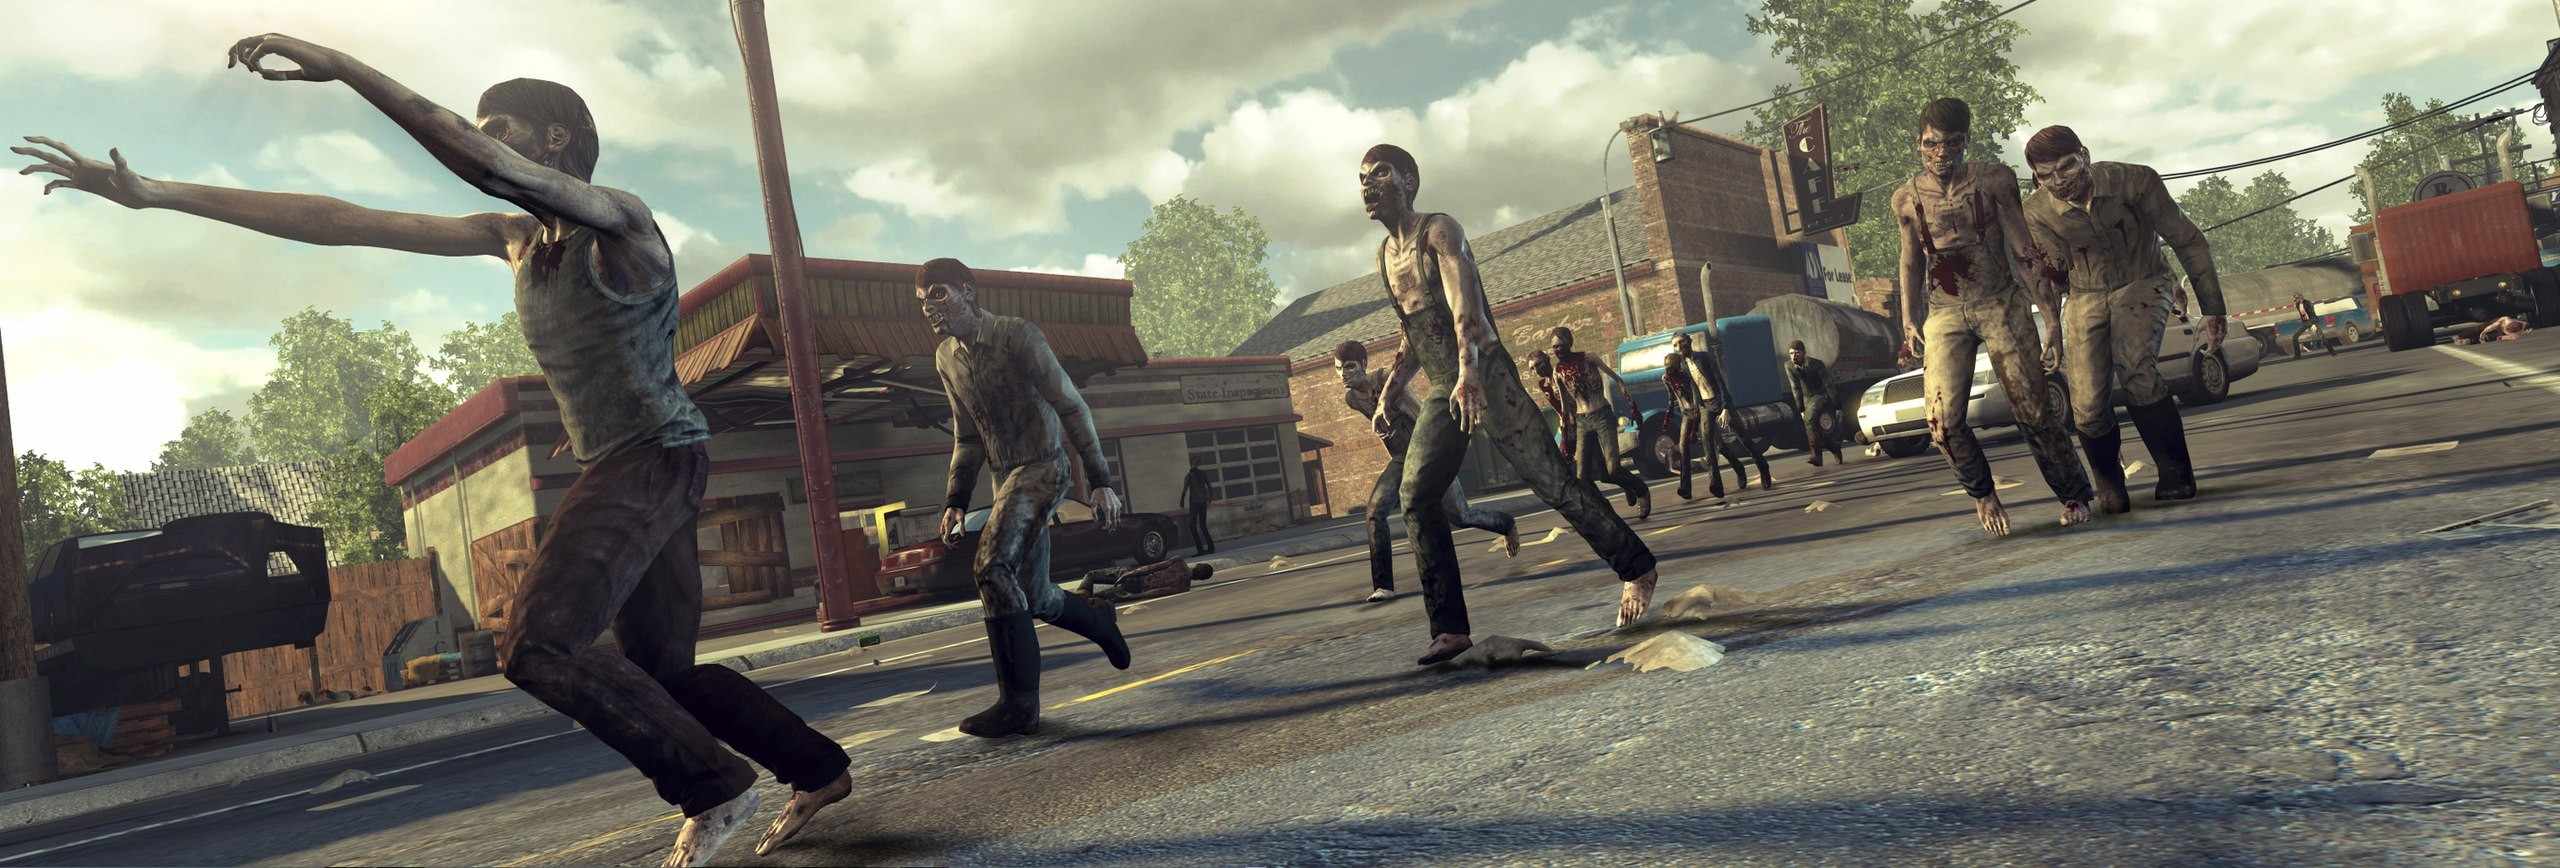 Лучшие игры про выживание - The Walking Dead Survival Instinct